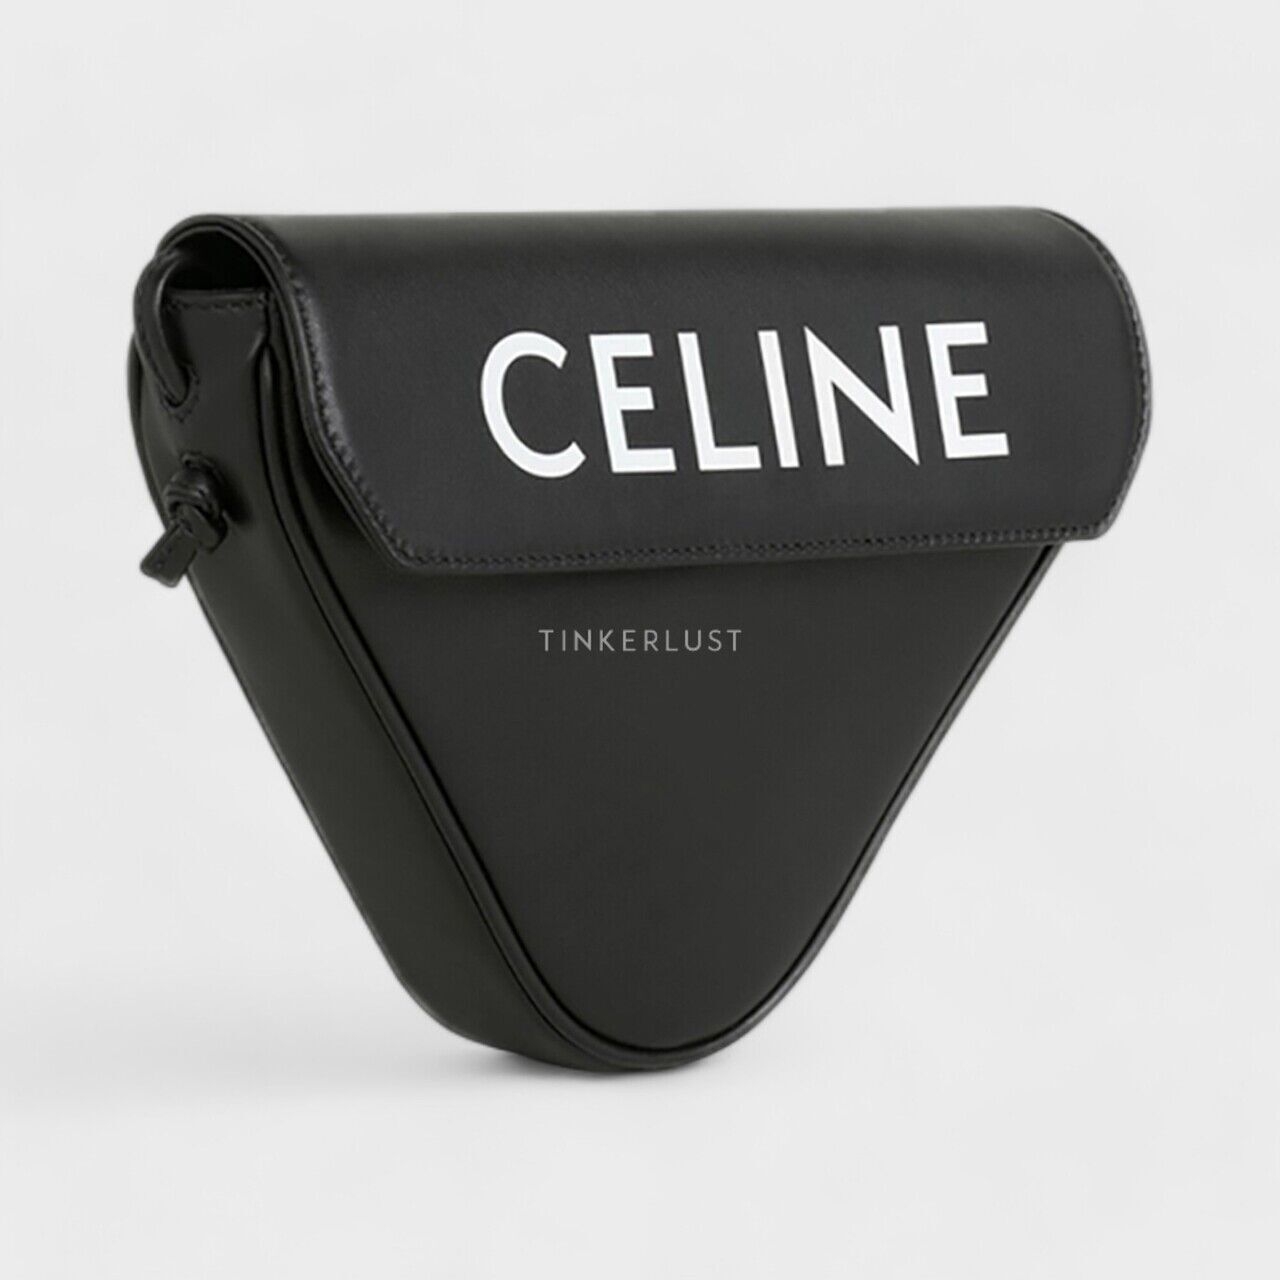 Celine Triangle in Black Smooth Calfskin with Celine Print Sling Bag